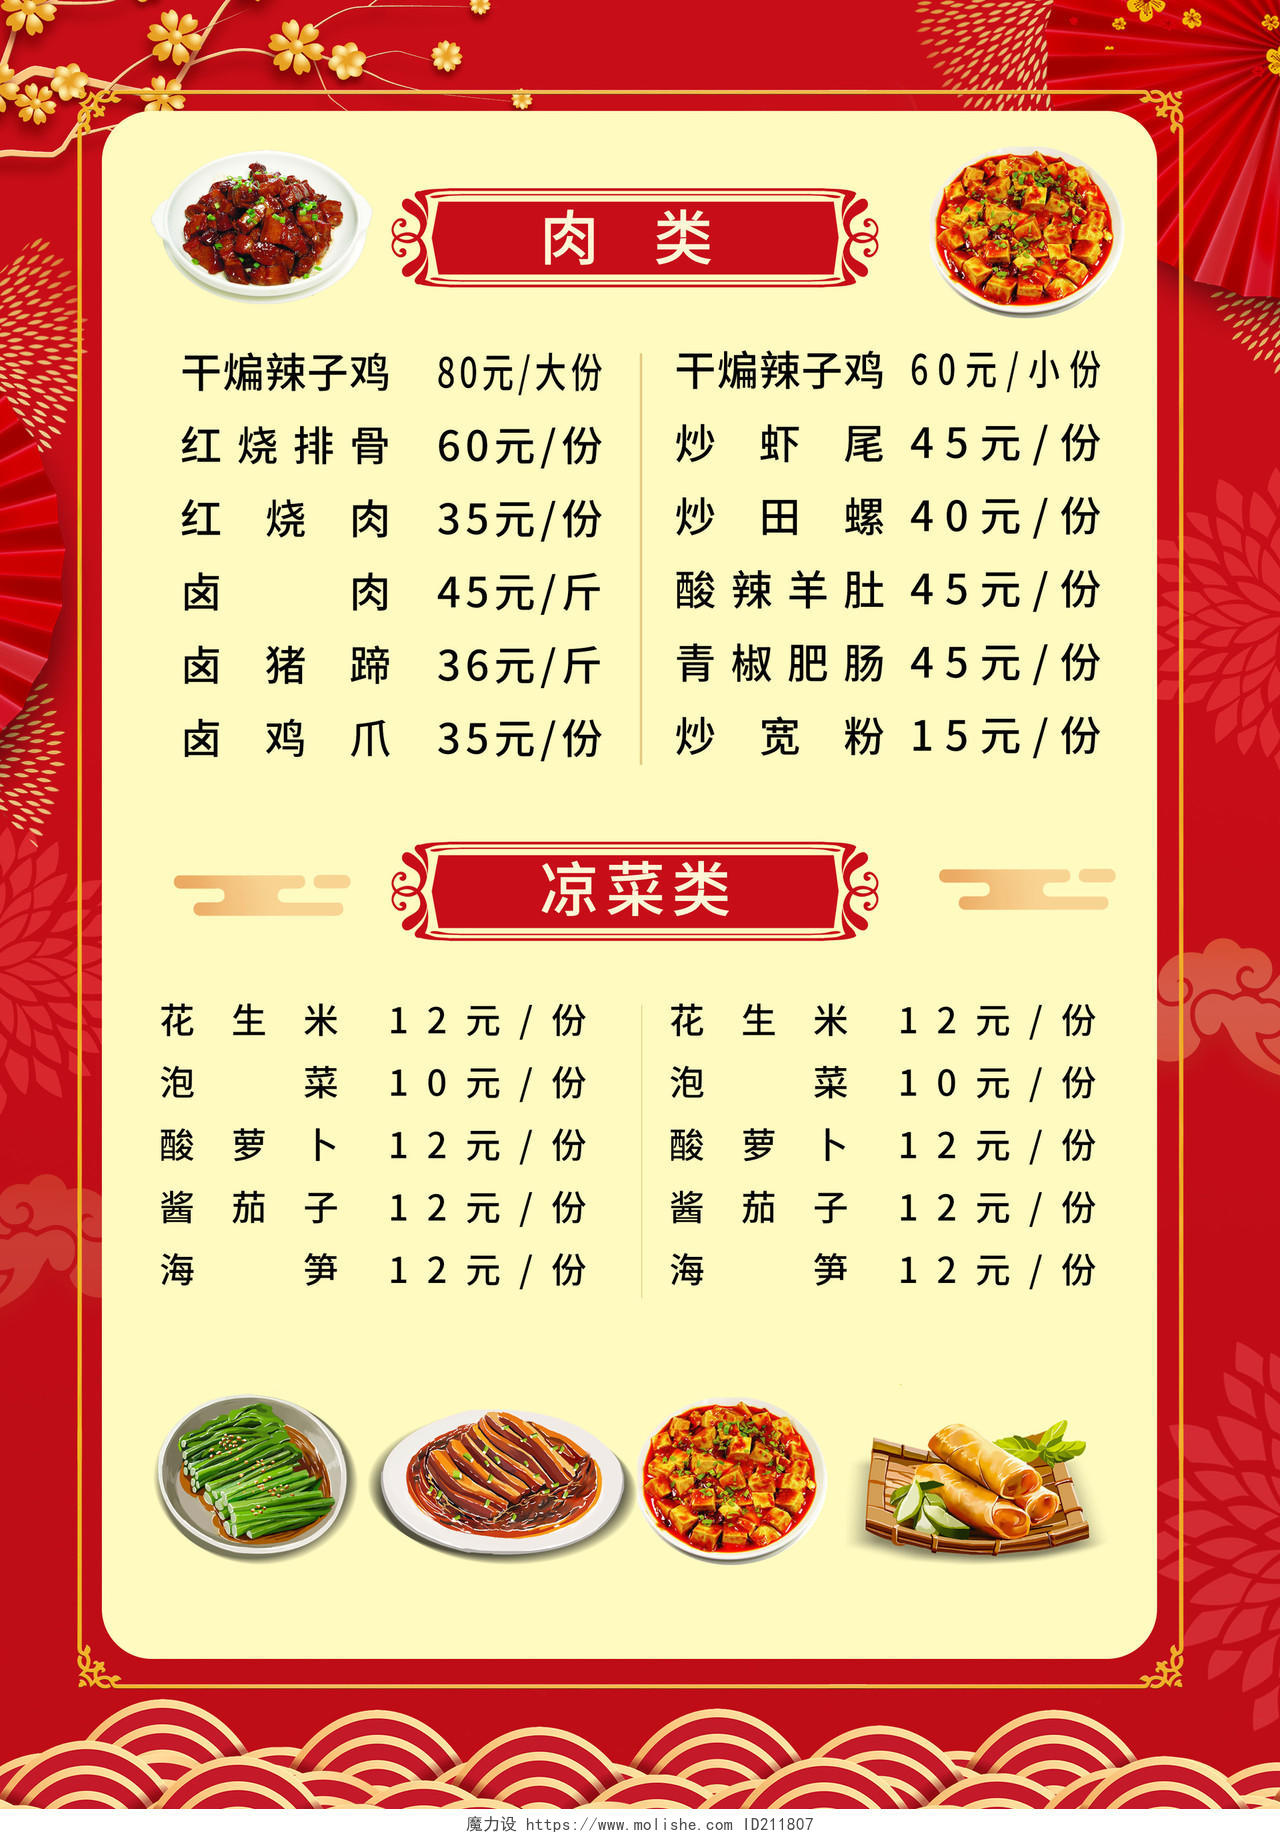 红色背景简洁创意饭店餐厅宣传菜单设计